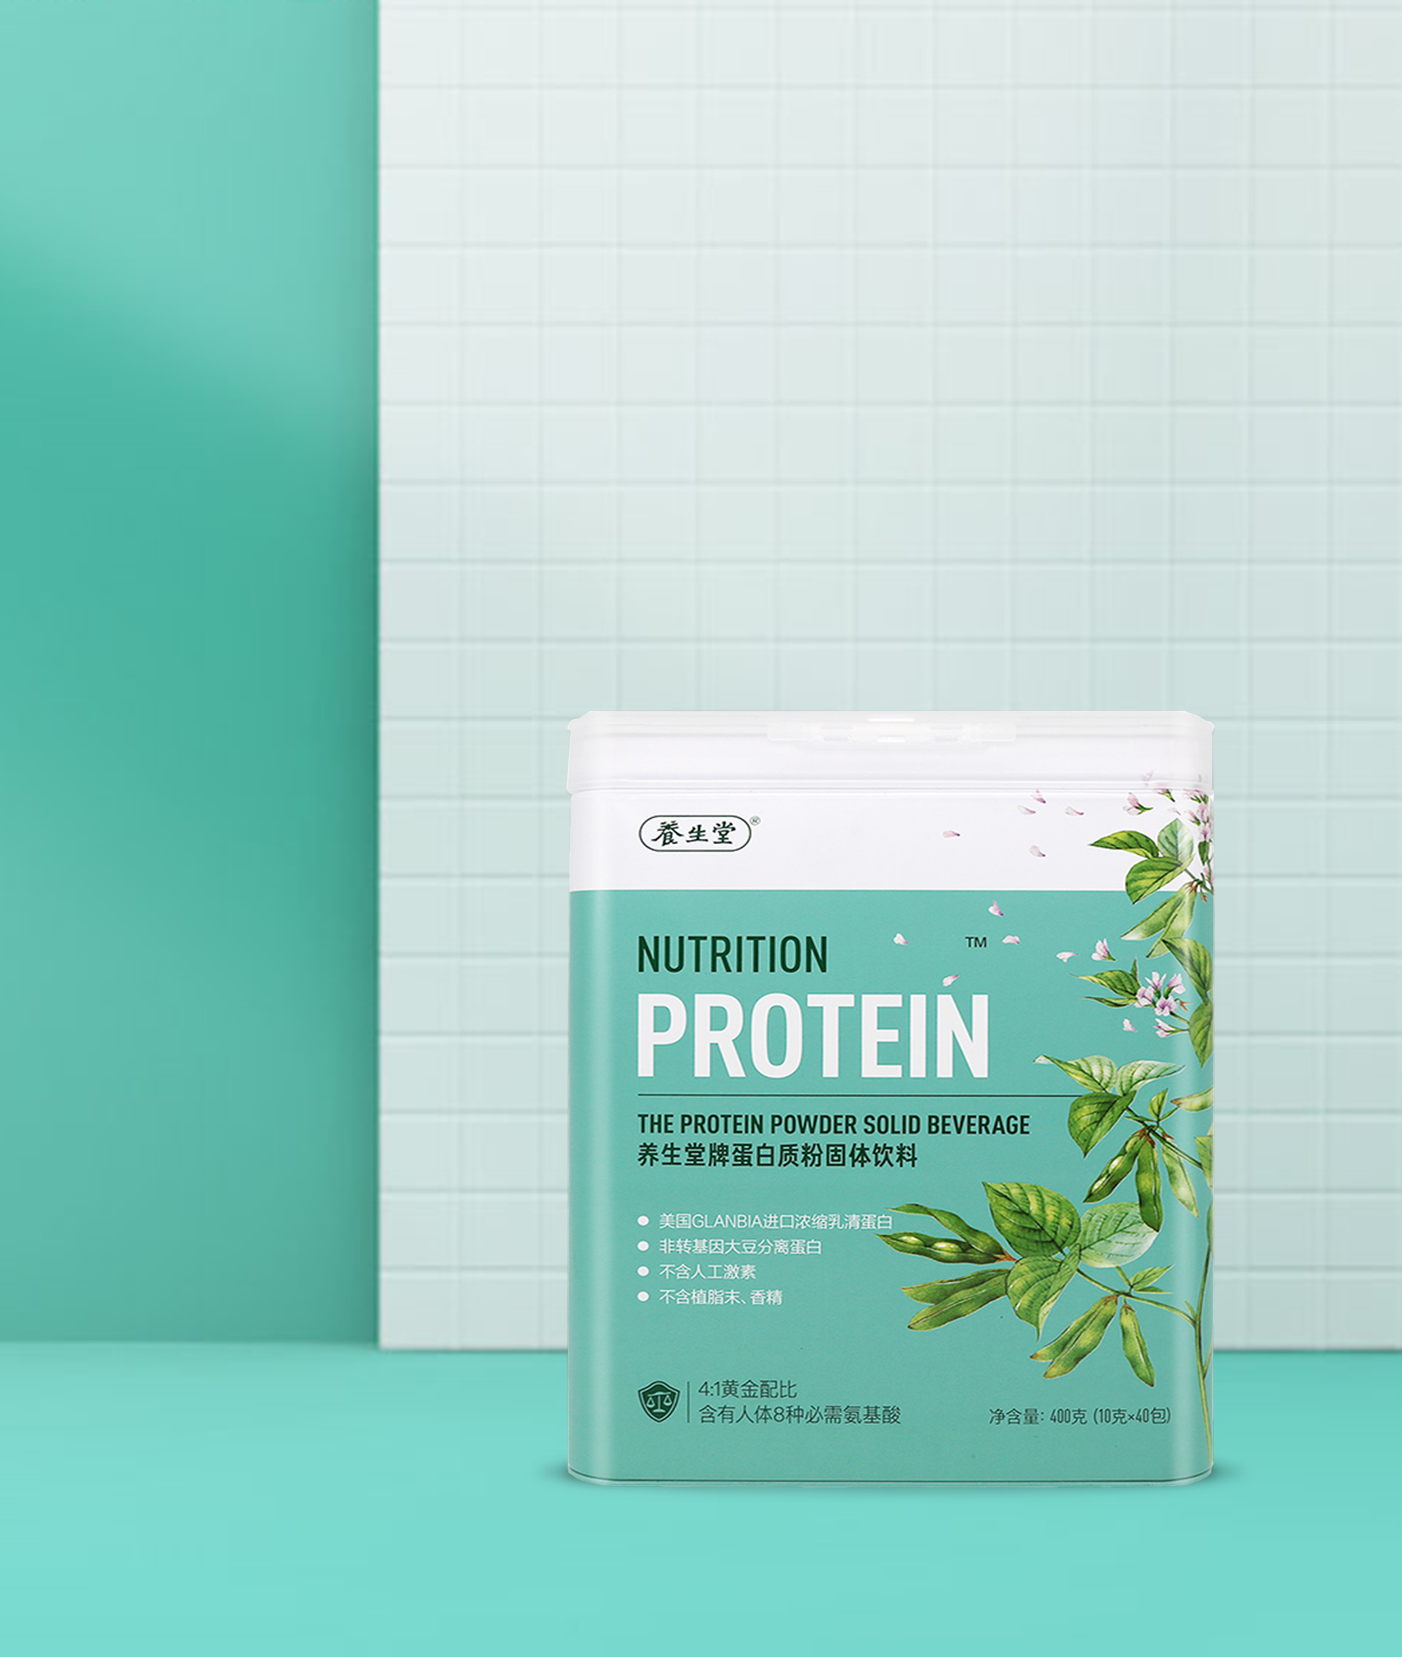 養生堂蛋白質粉包裝設計-食品保健品包裝設計-杭州達岸品牌策劃設計公司